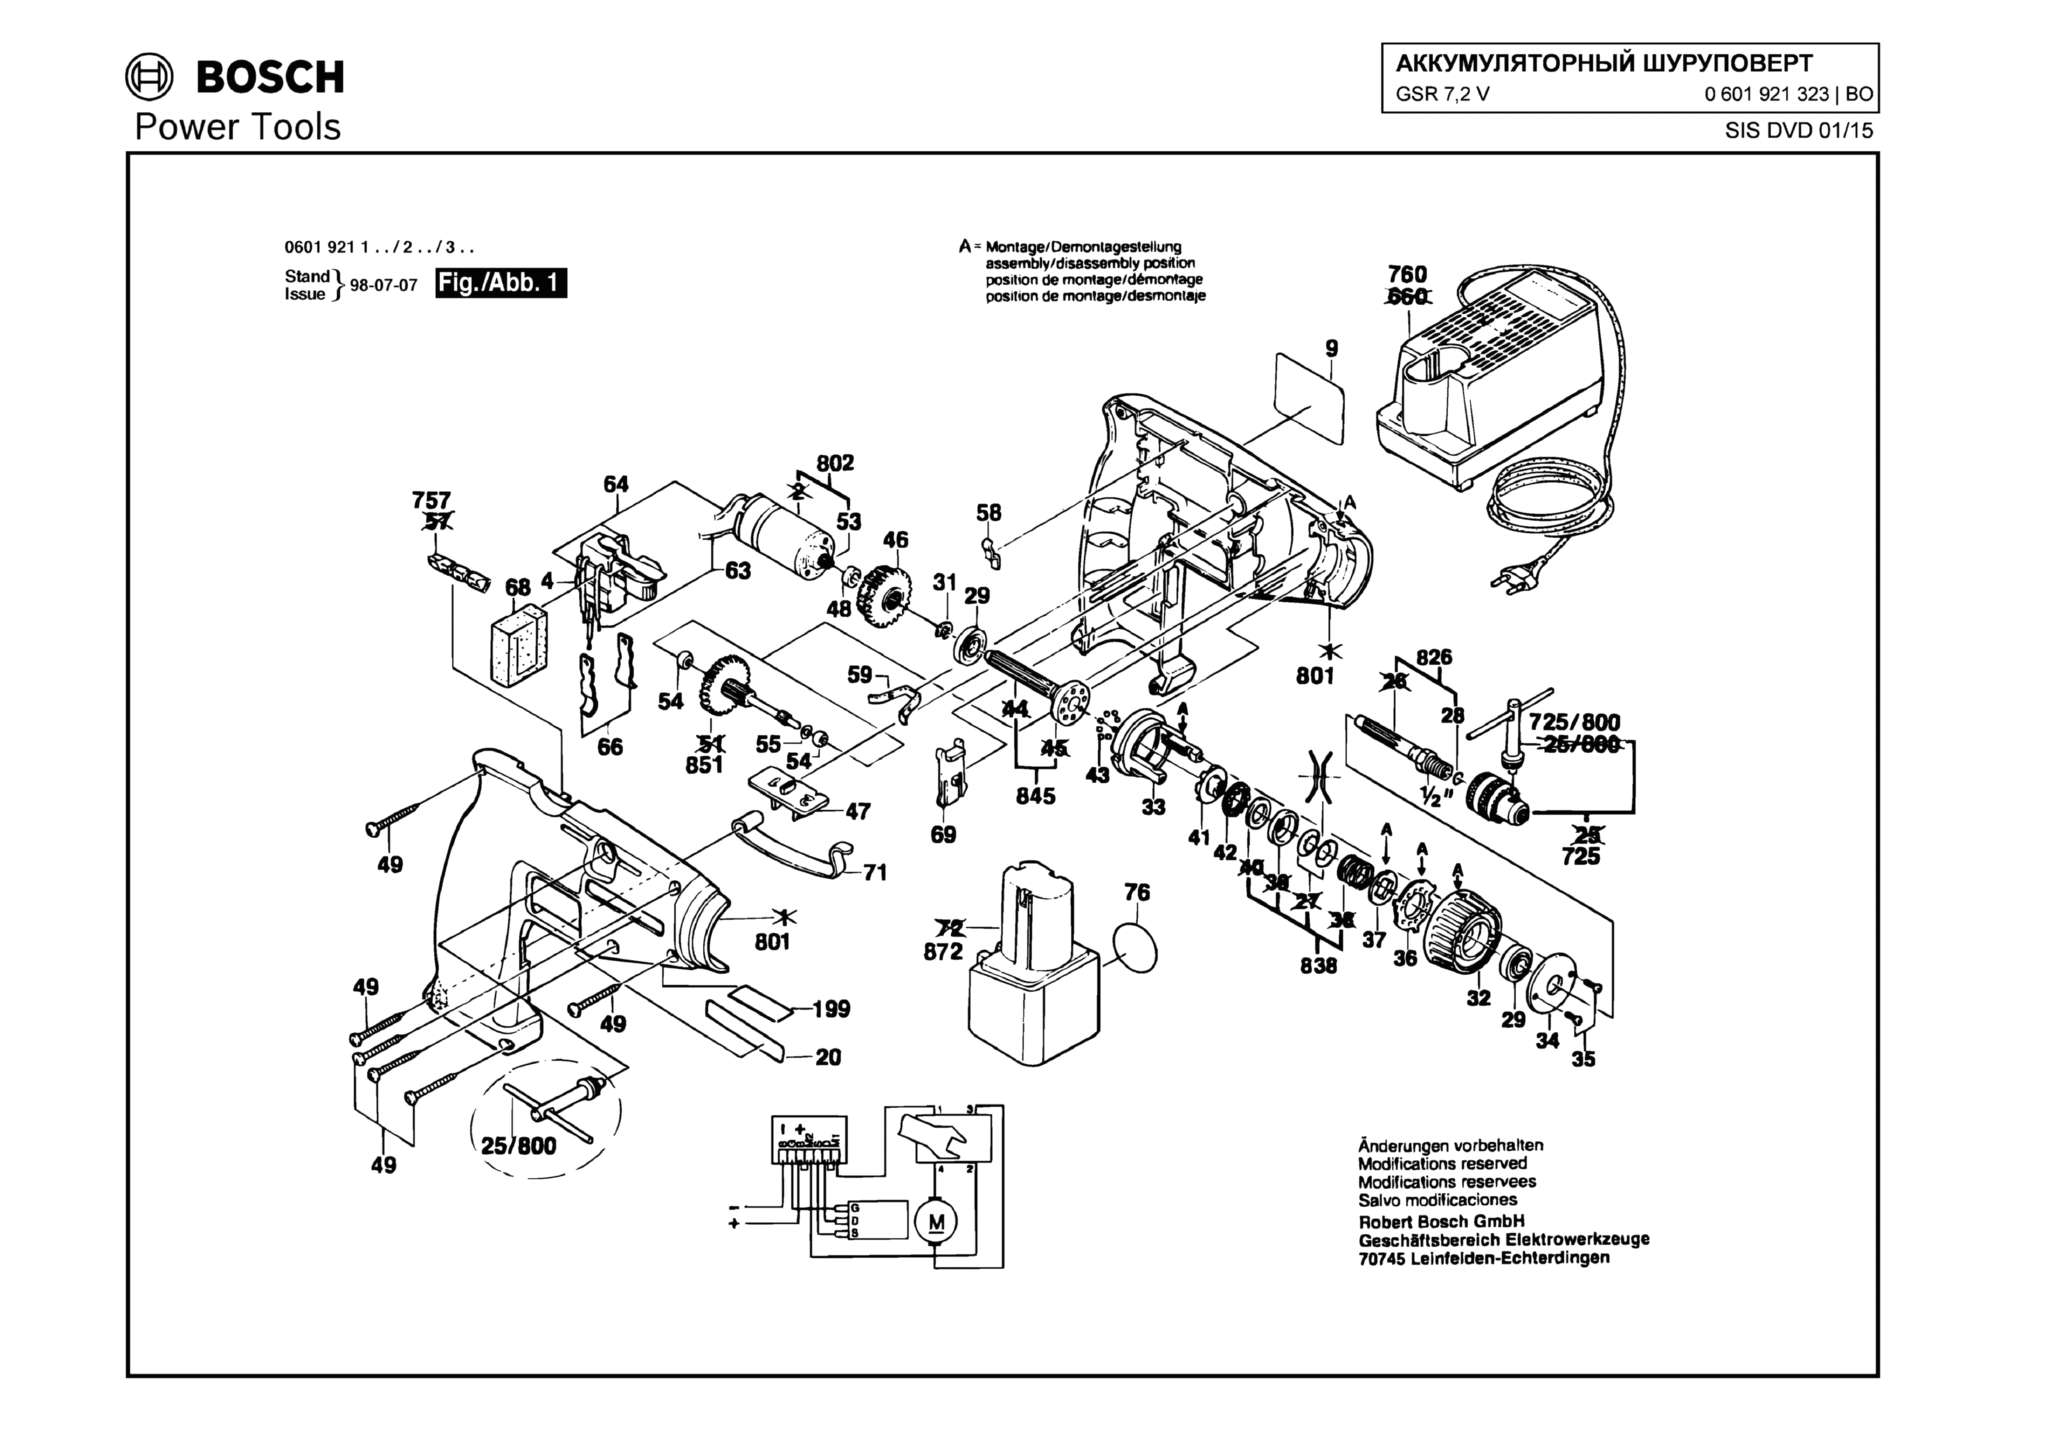 Запчасти, схема и деталировка Bosch GSR 7,2 V (ТИП 0601921323)